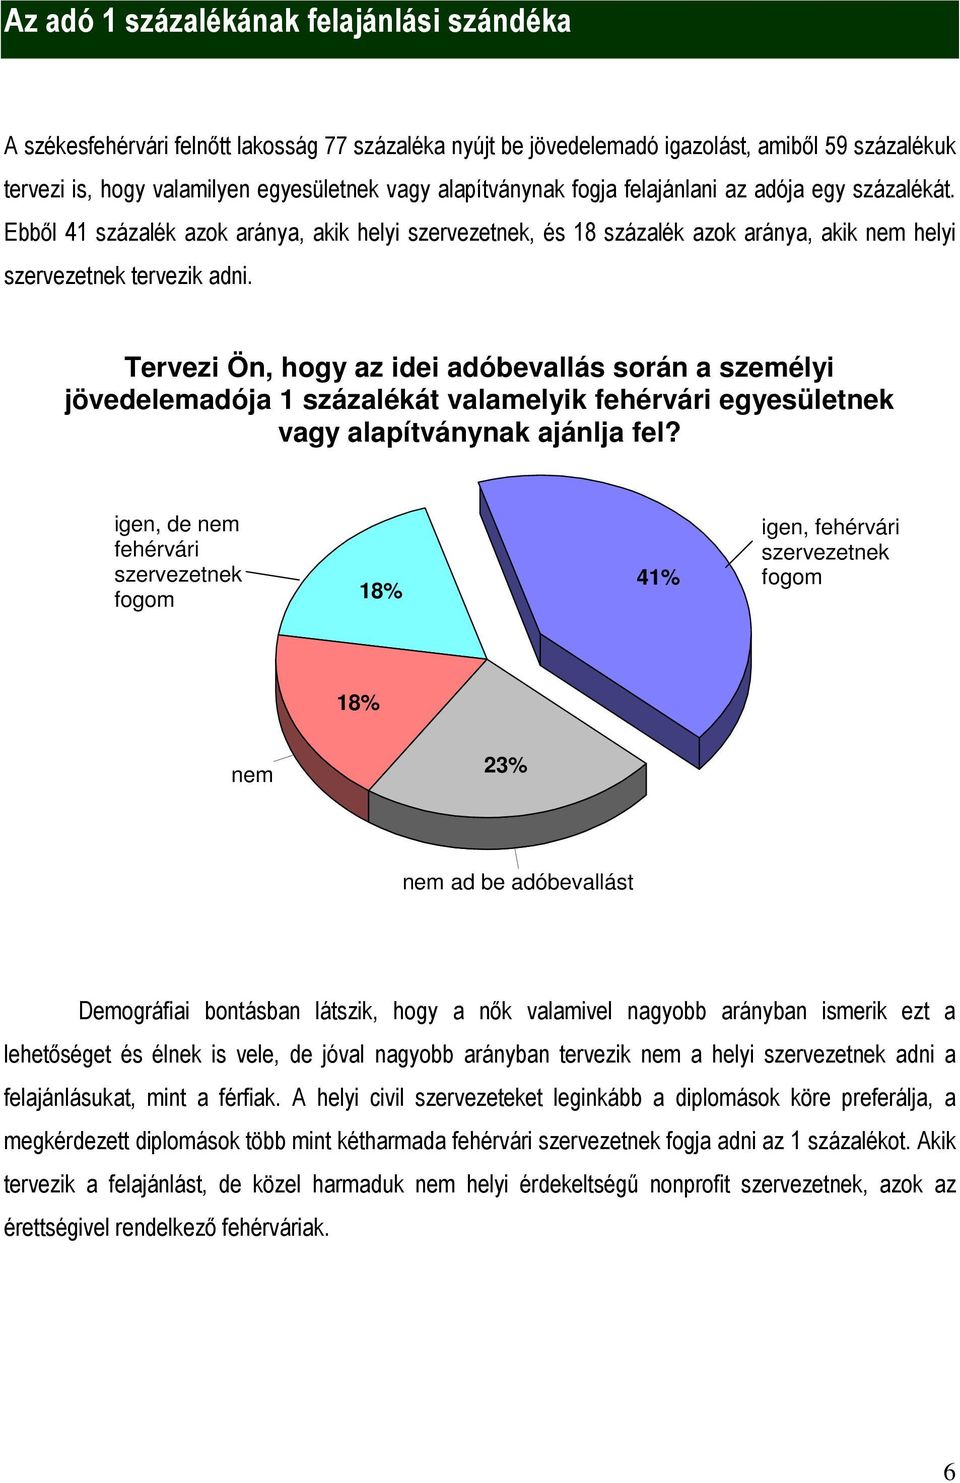 Tervezi Ön, hogy az idei adóbevallás során a személyi jövedelemadója 1 százalékát valamelyik fehérvári egyesületnek vagy alapítványnak ajánlja fel?